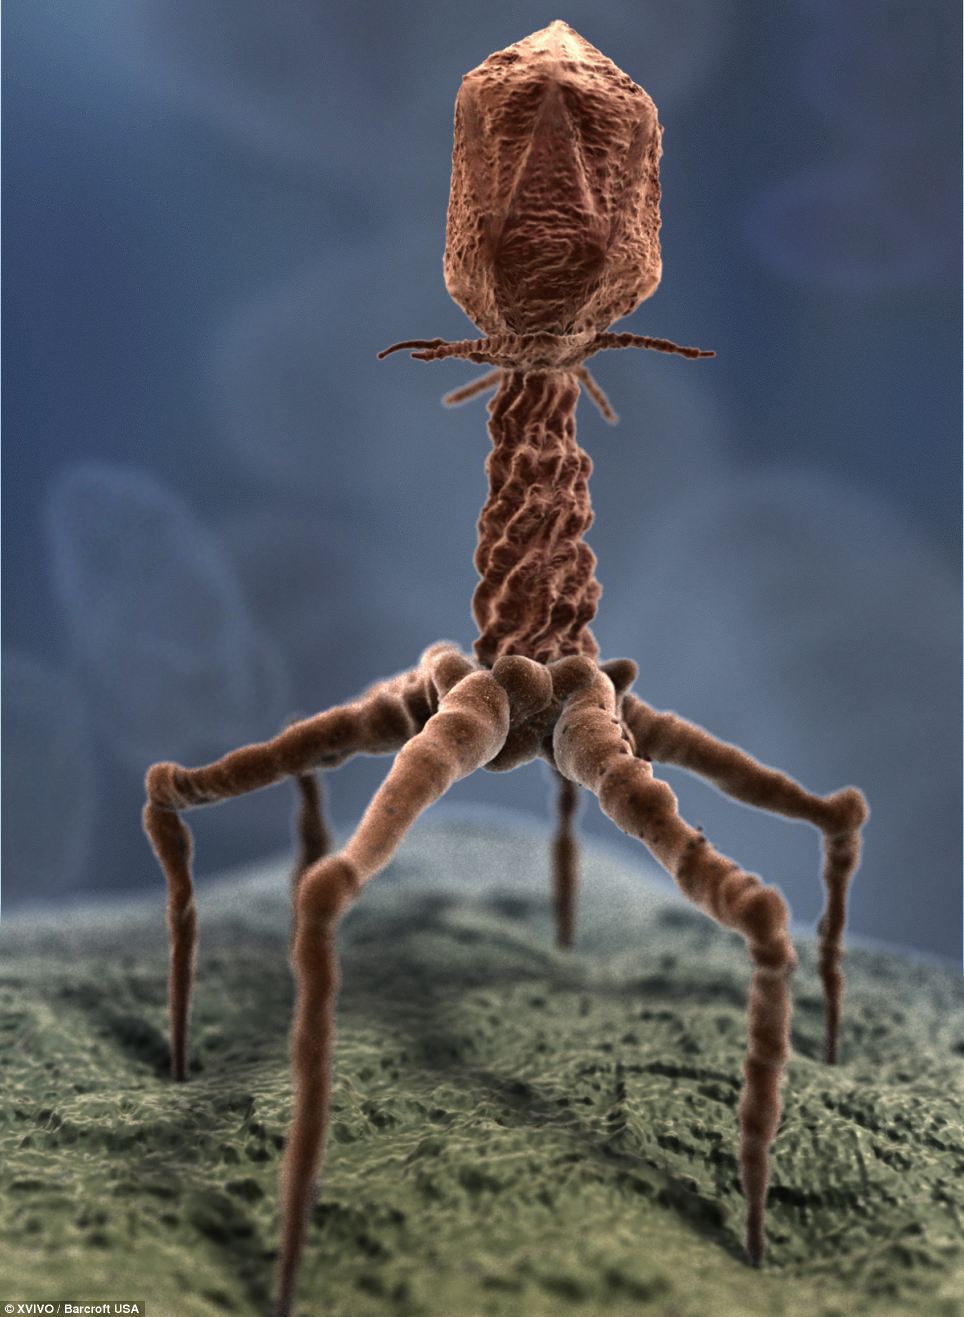 Бактериофаги (др.-греч. «пожираю») — вирусы, избирательно поражающие бактериальные клетки. Чаще всего бактериофаги размножаются внутри бактерий. Размер частиц приблизительно от 20 до 200 нм